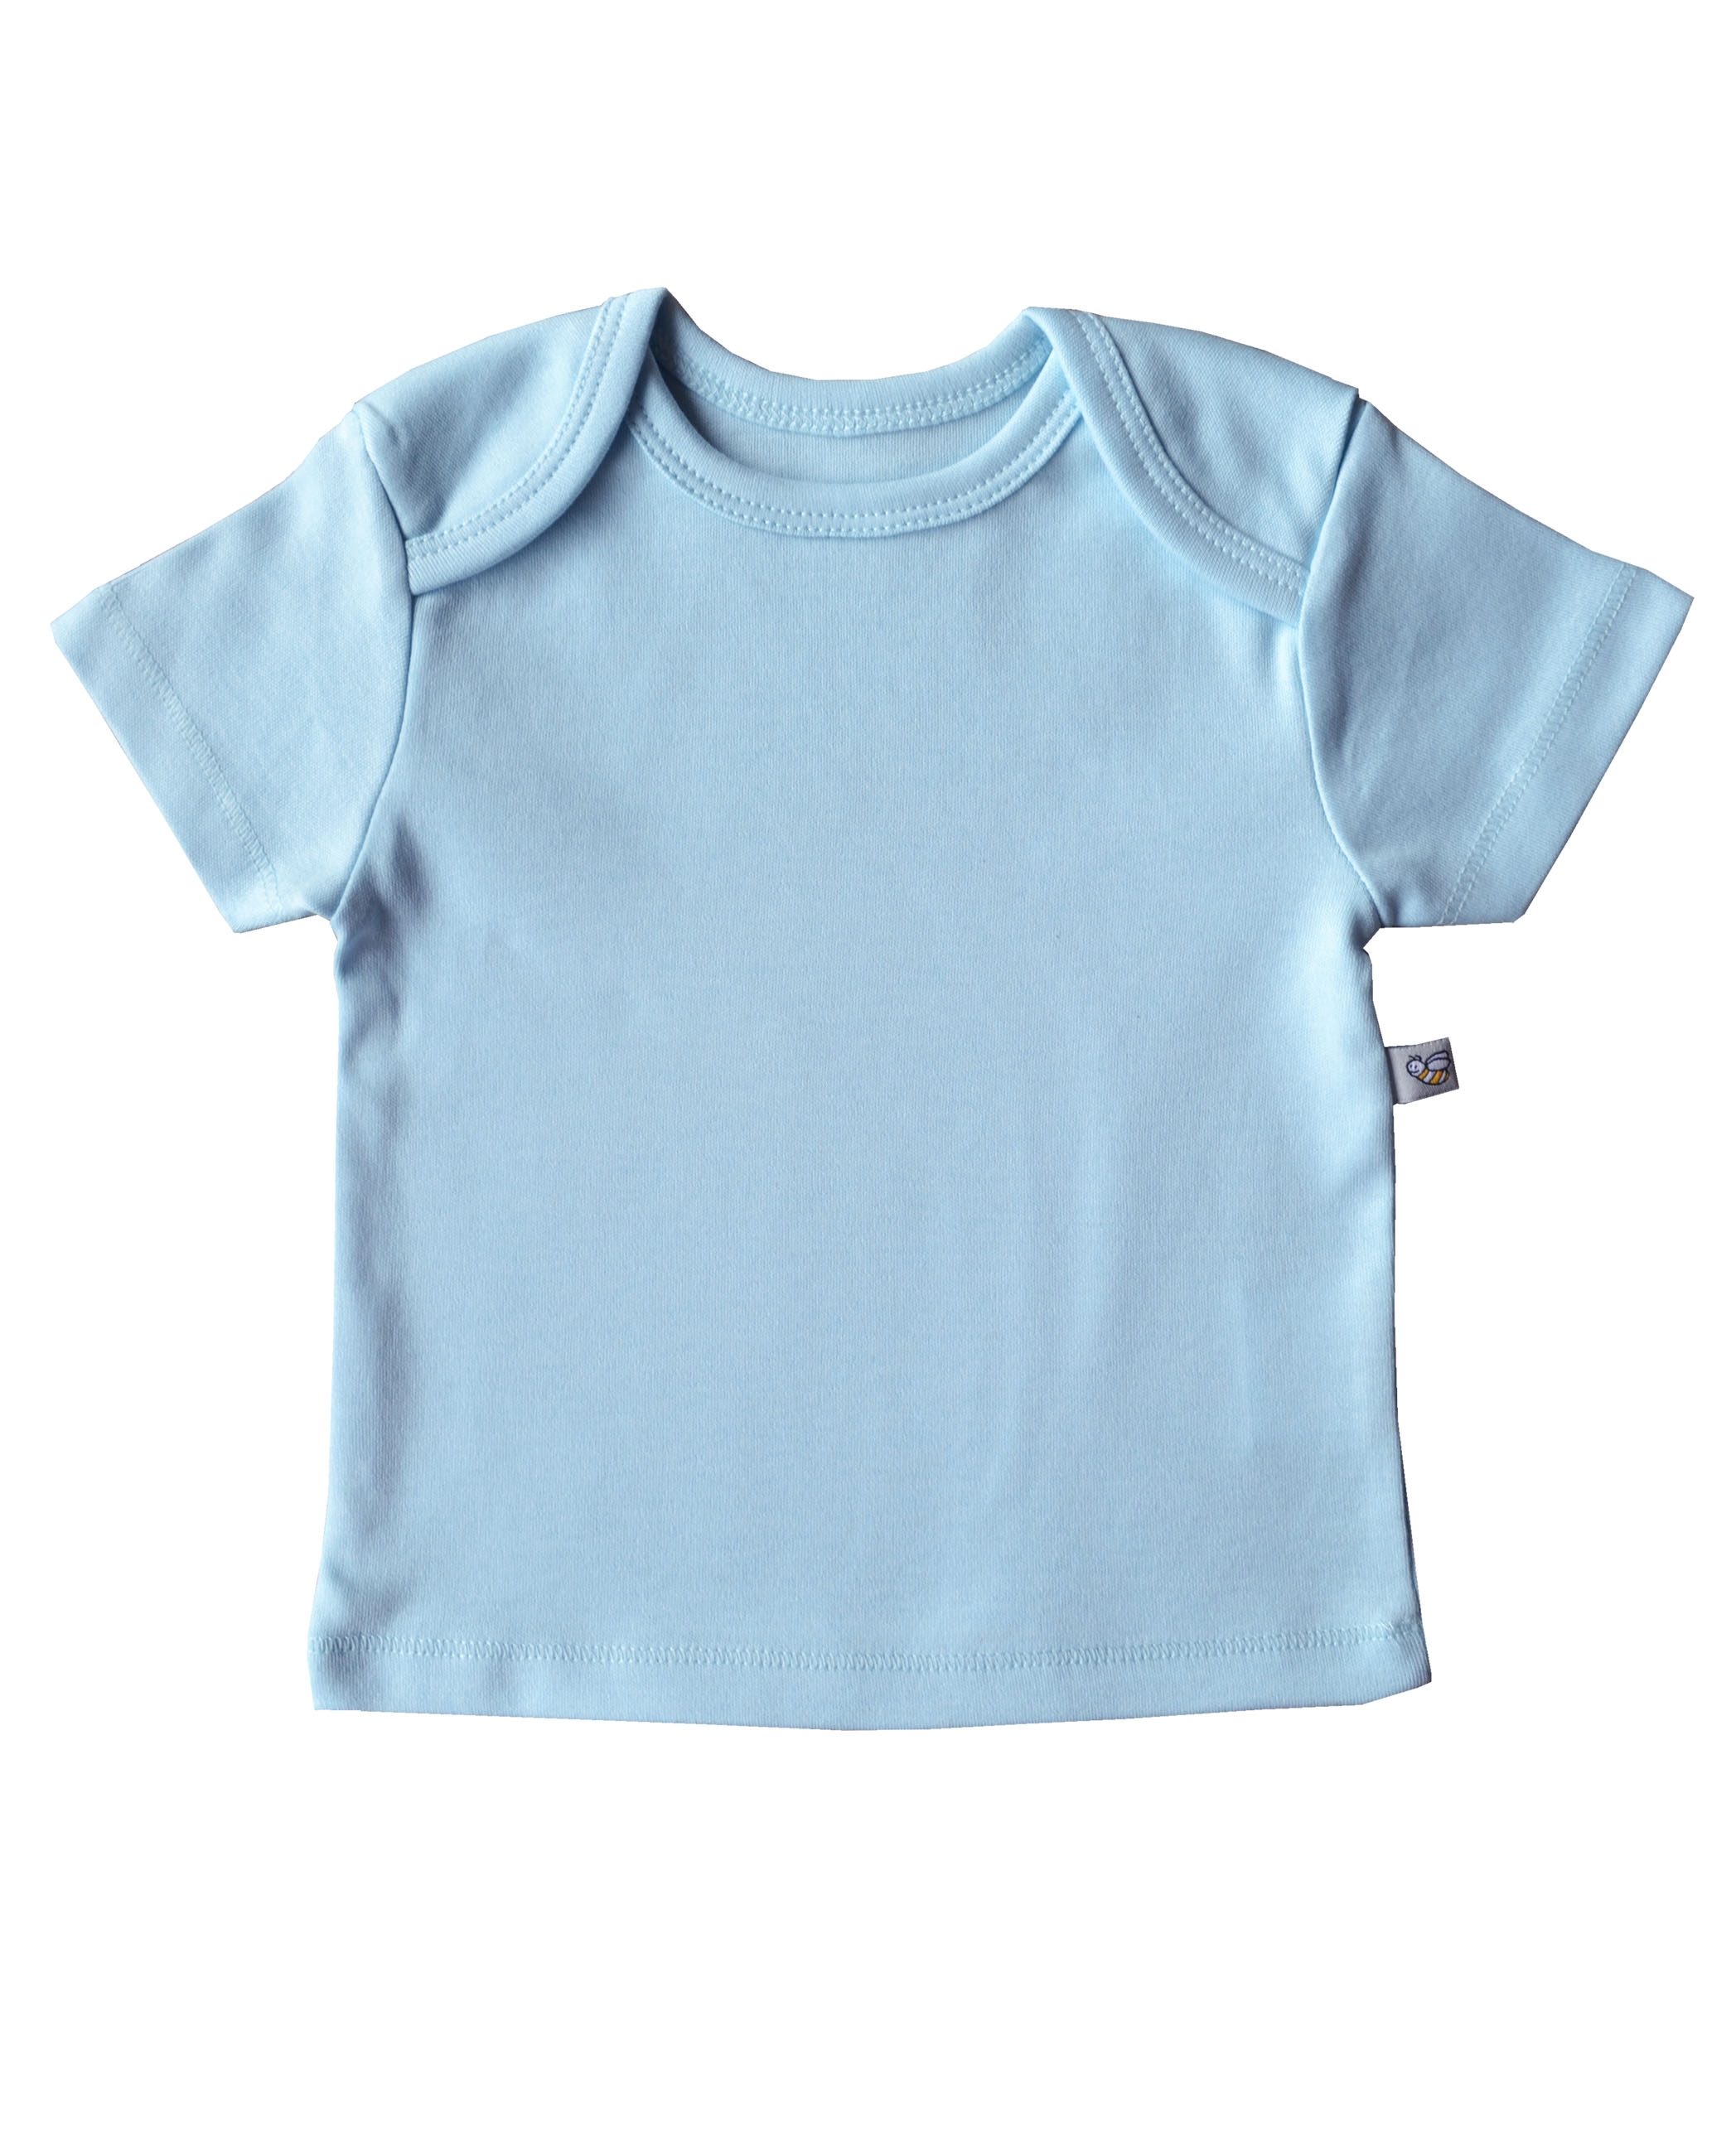 Babeez | Blue Short Sleeve Top (100% Cotton Interlock Biowash) undefined